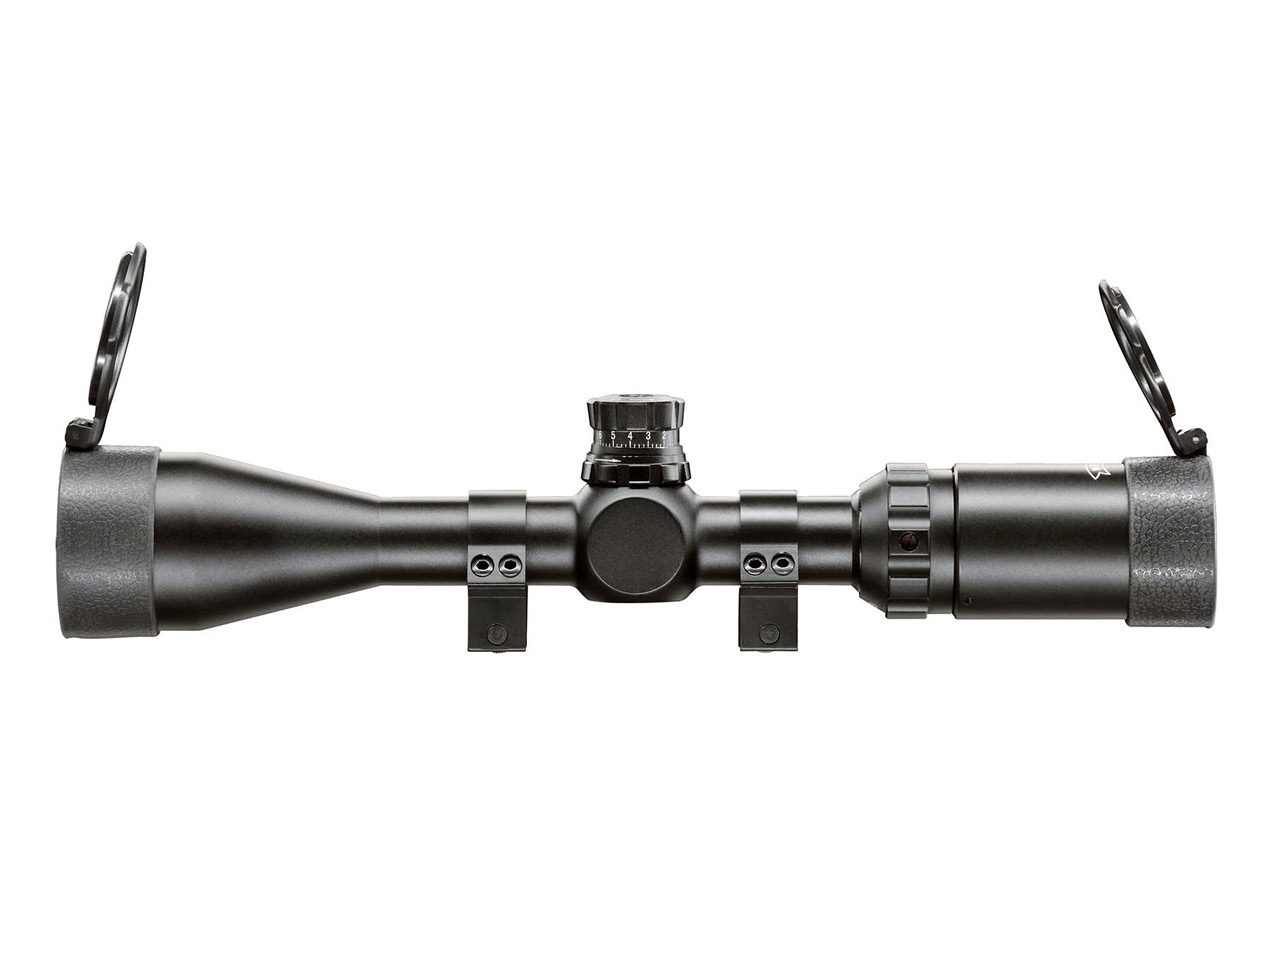 Taktisches Zielfernrohr Walther 3-9x44 Sniper, MilDot Absehen, Montage für Weaver-, Picatinny-Schienen